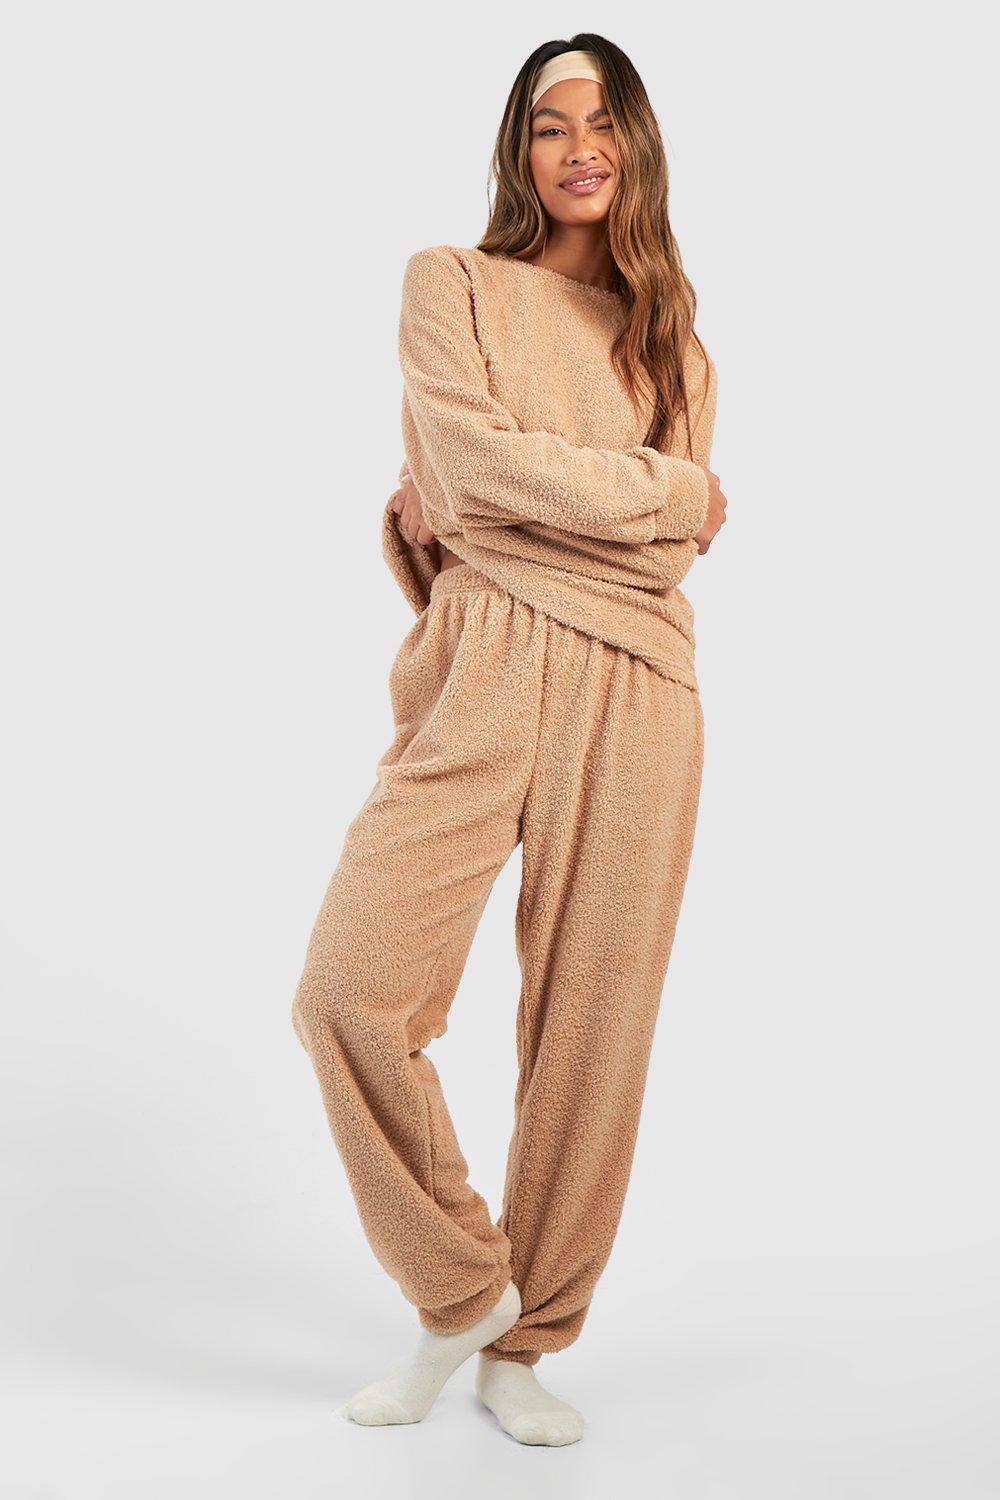 Caracilia Womens Pajama Sets Two Piece Sweatsuit Lounge Matching